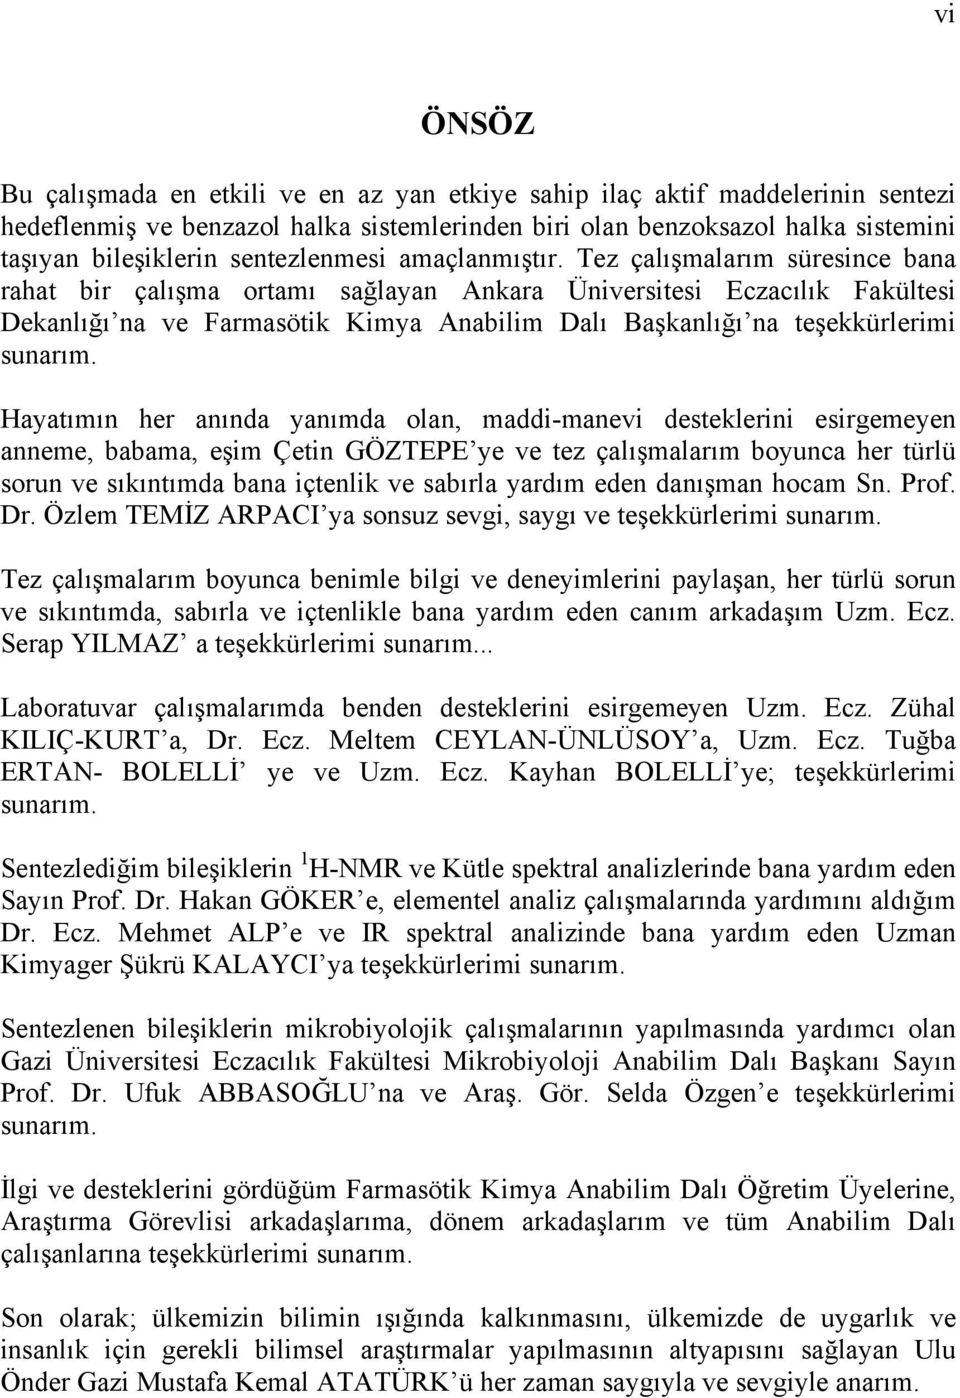 Tez çalışmalarım süresince bana rahat bir çalışma ortamı sağlayan Ankara Üniversitesi Eczacılık Fakültesi Dekanlığı na ve Farmasötik Kimya Anabilim Dalı Başkanlığı na teşekkürlerimi sunarım.